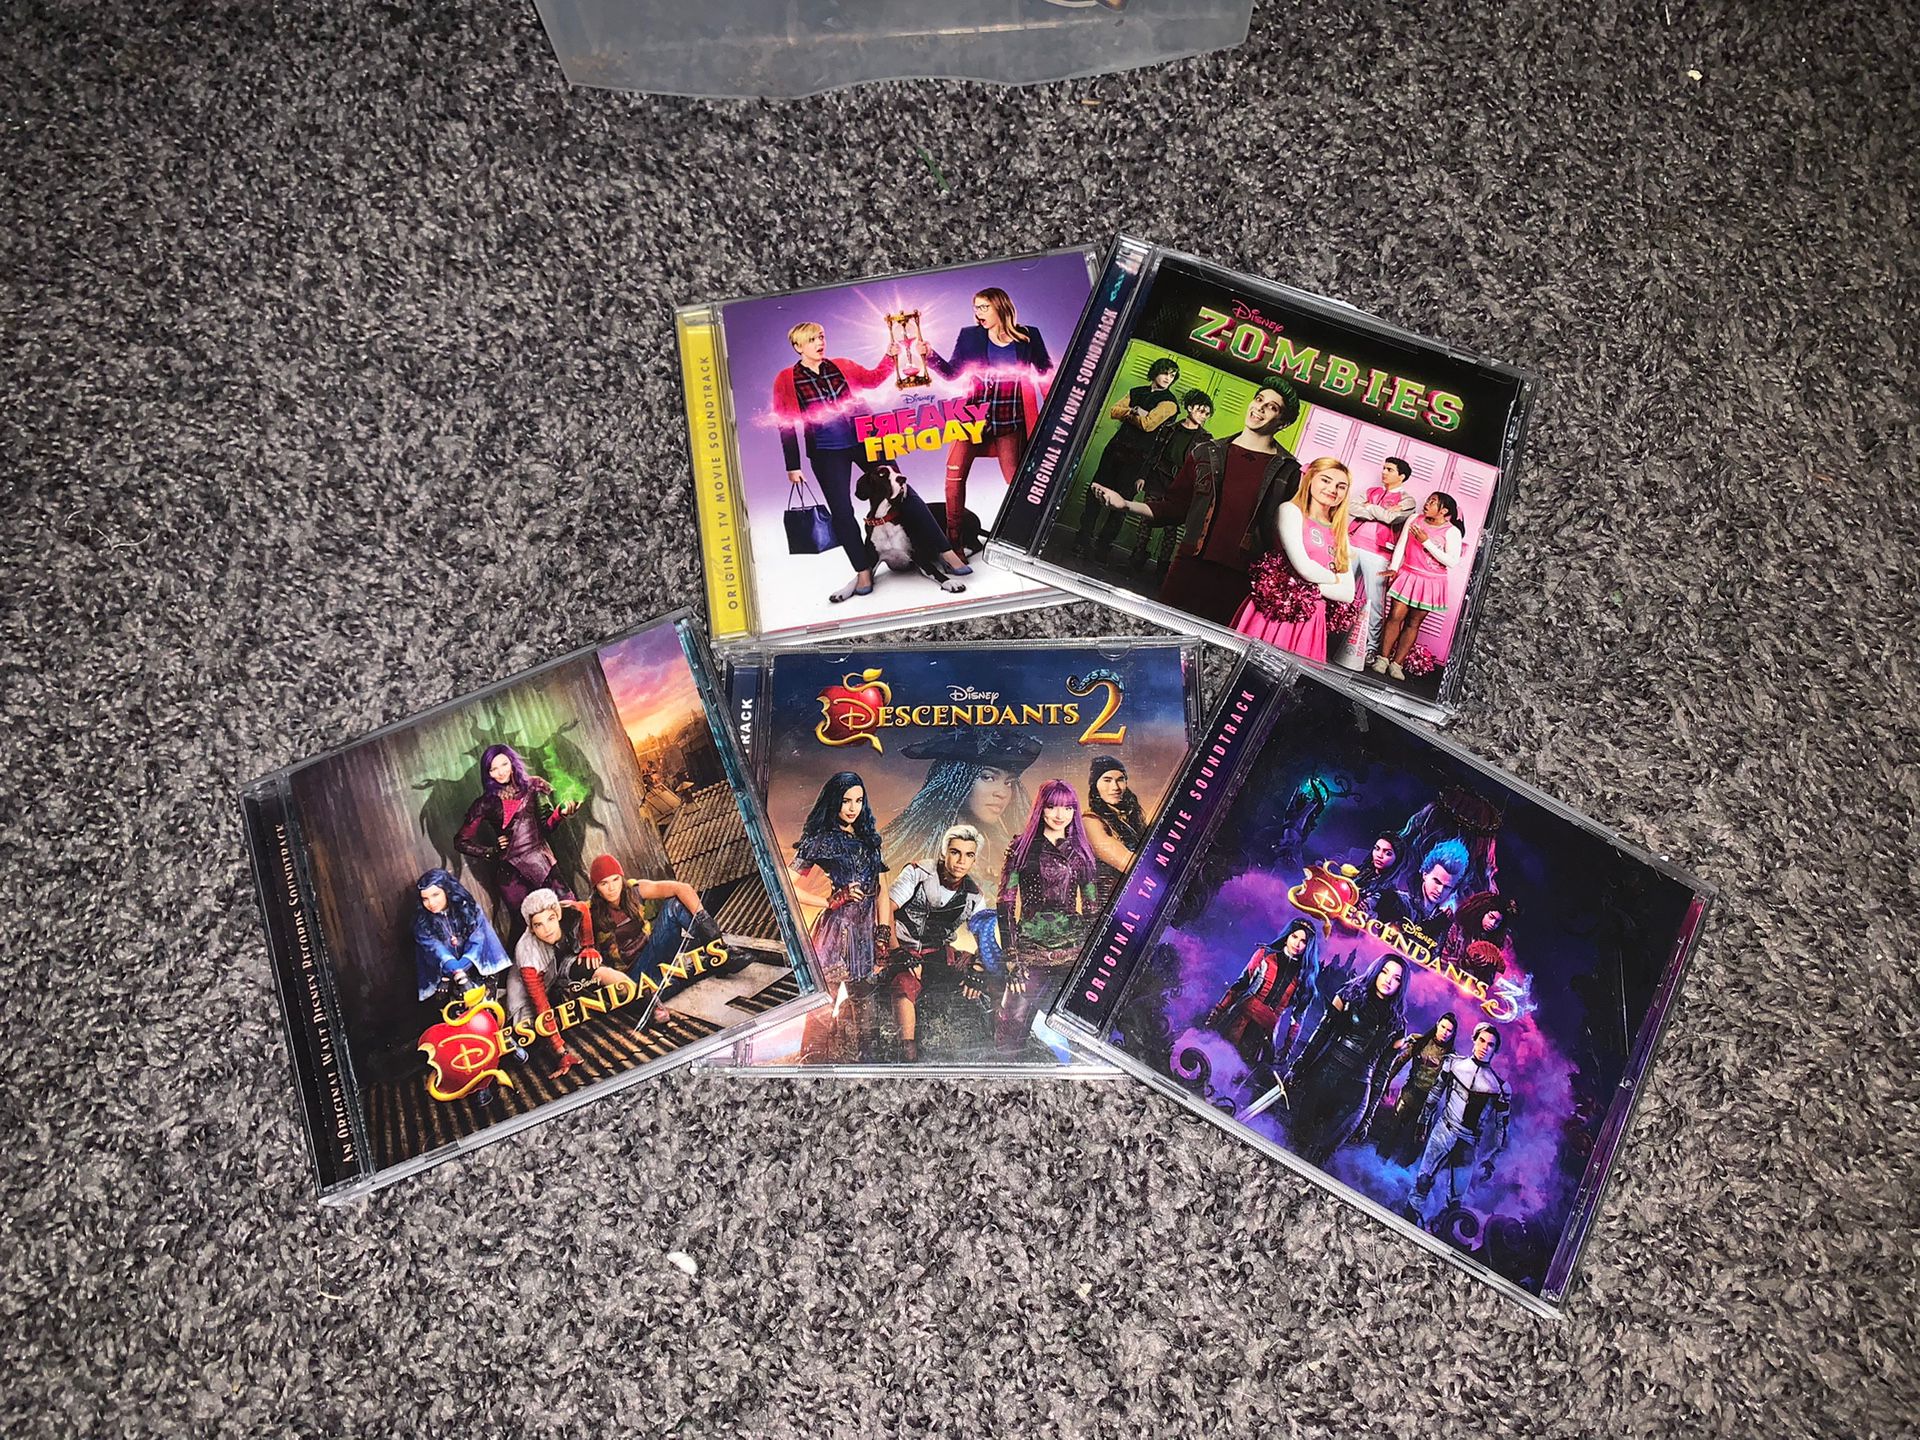 Disney soundtrack cds (5)